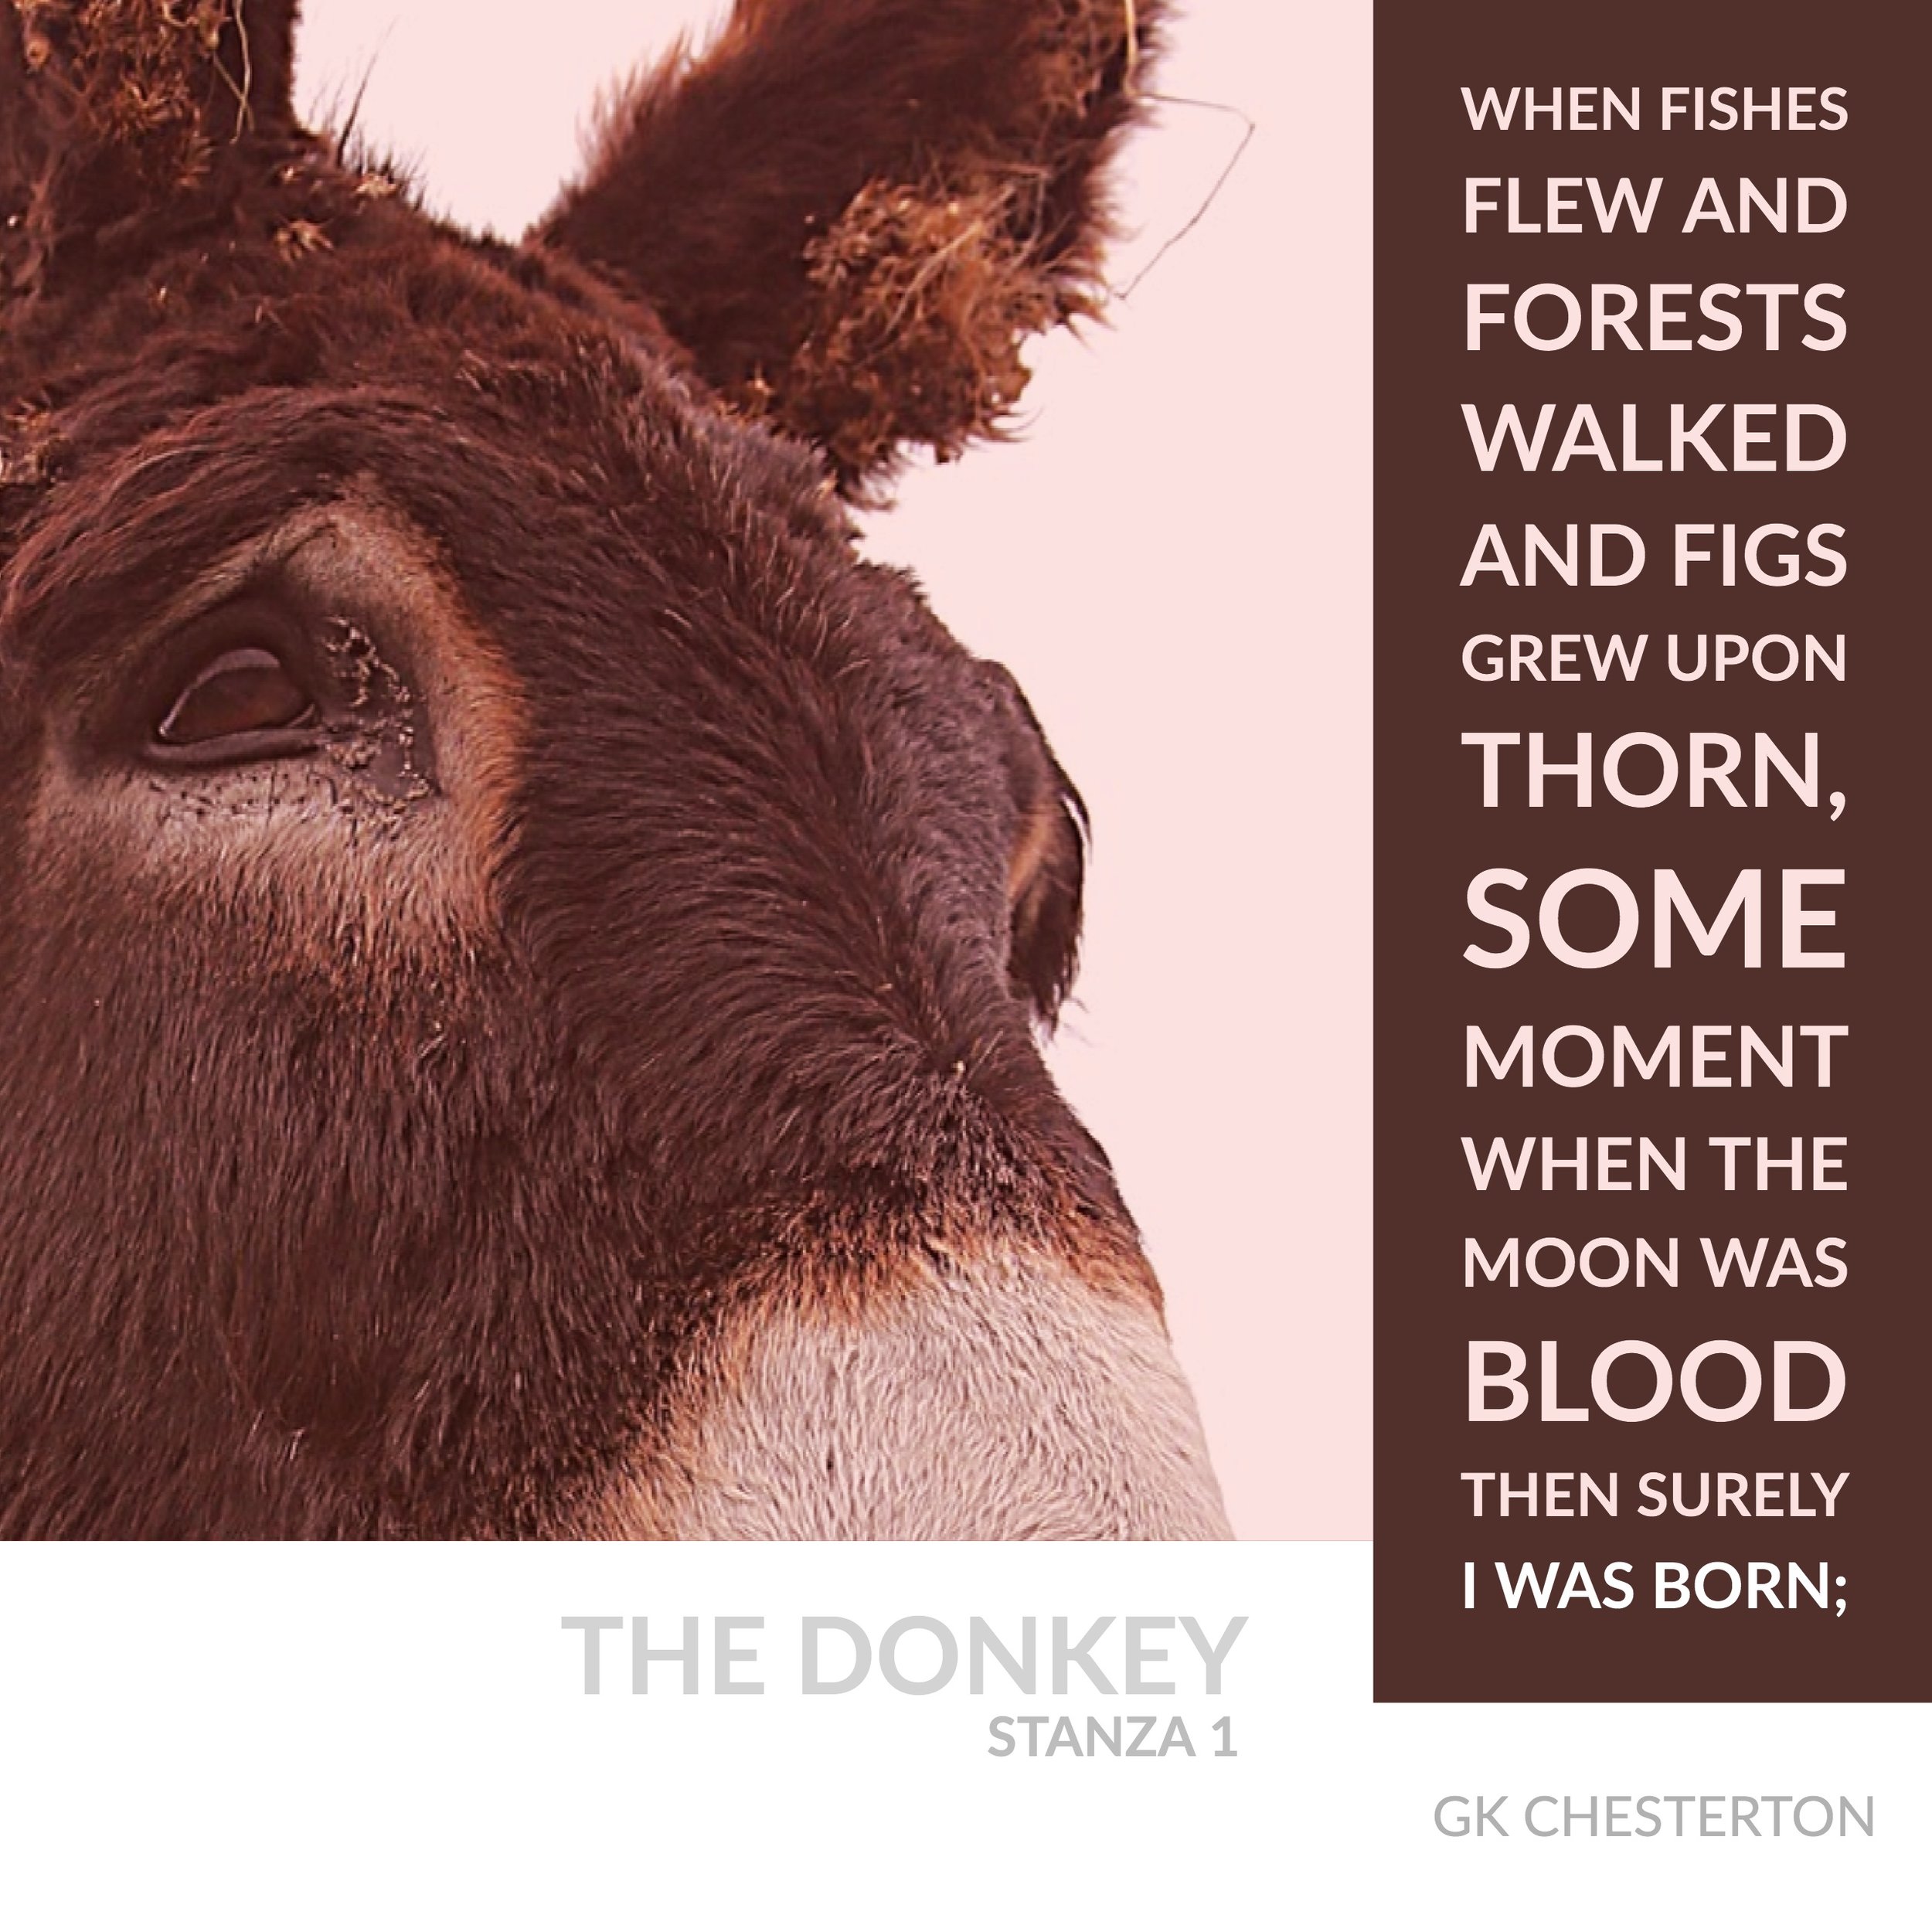 The Donkey 1 Copy (1).jpg